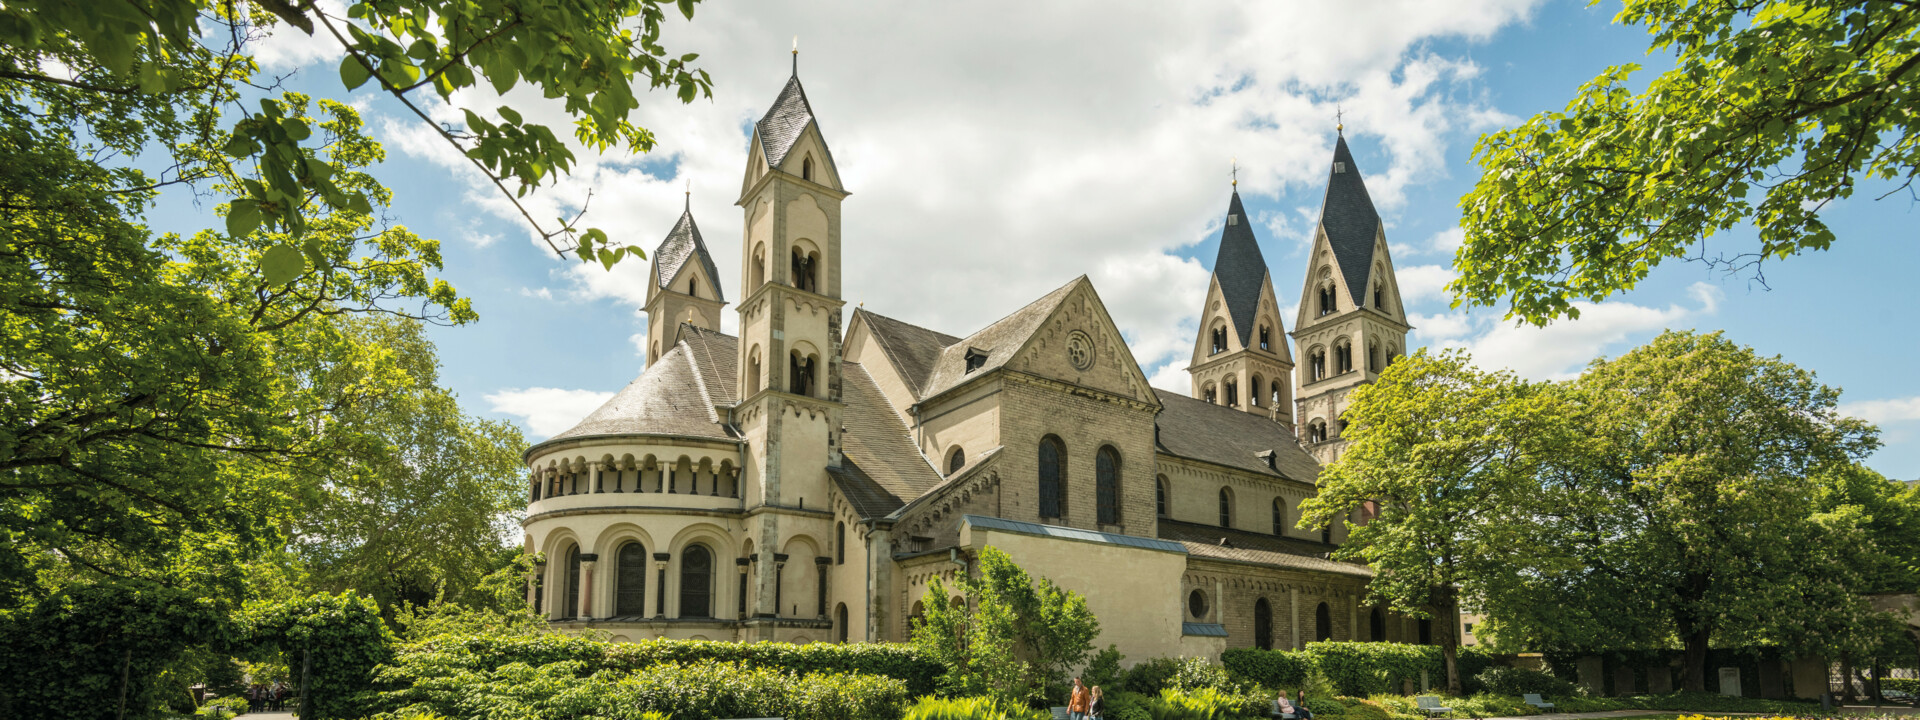 Ansicht der Basilika St. Kastor aus Richtung Blumenhof ©Koblenz-Touristik GmbH, Dominik Ketz